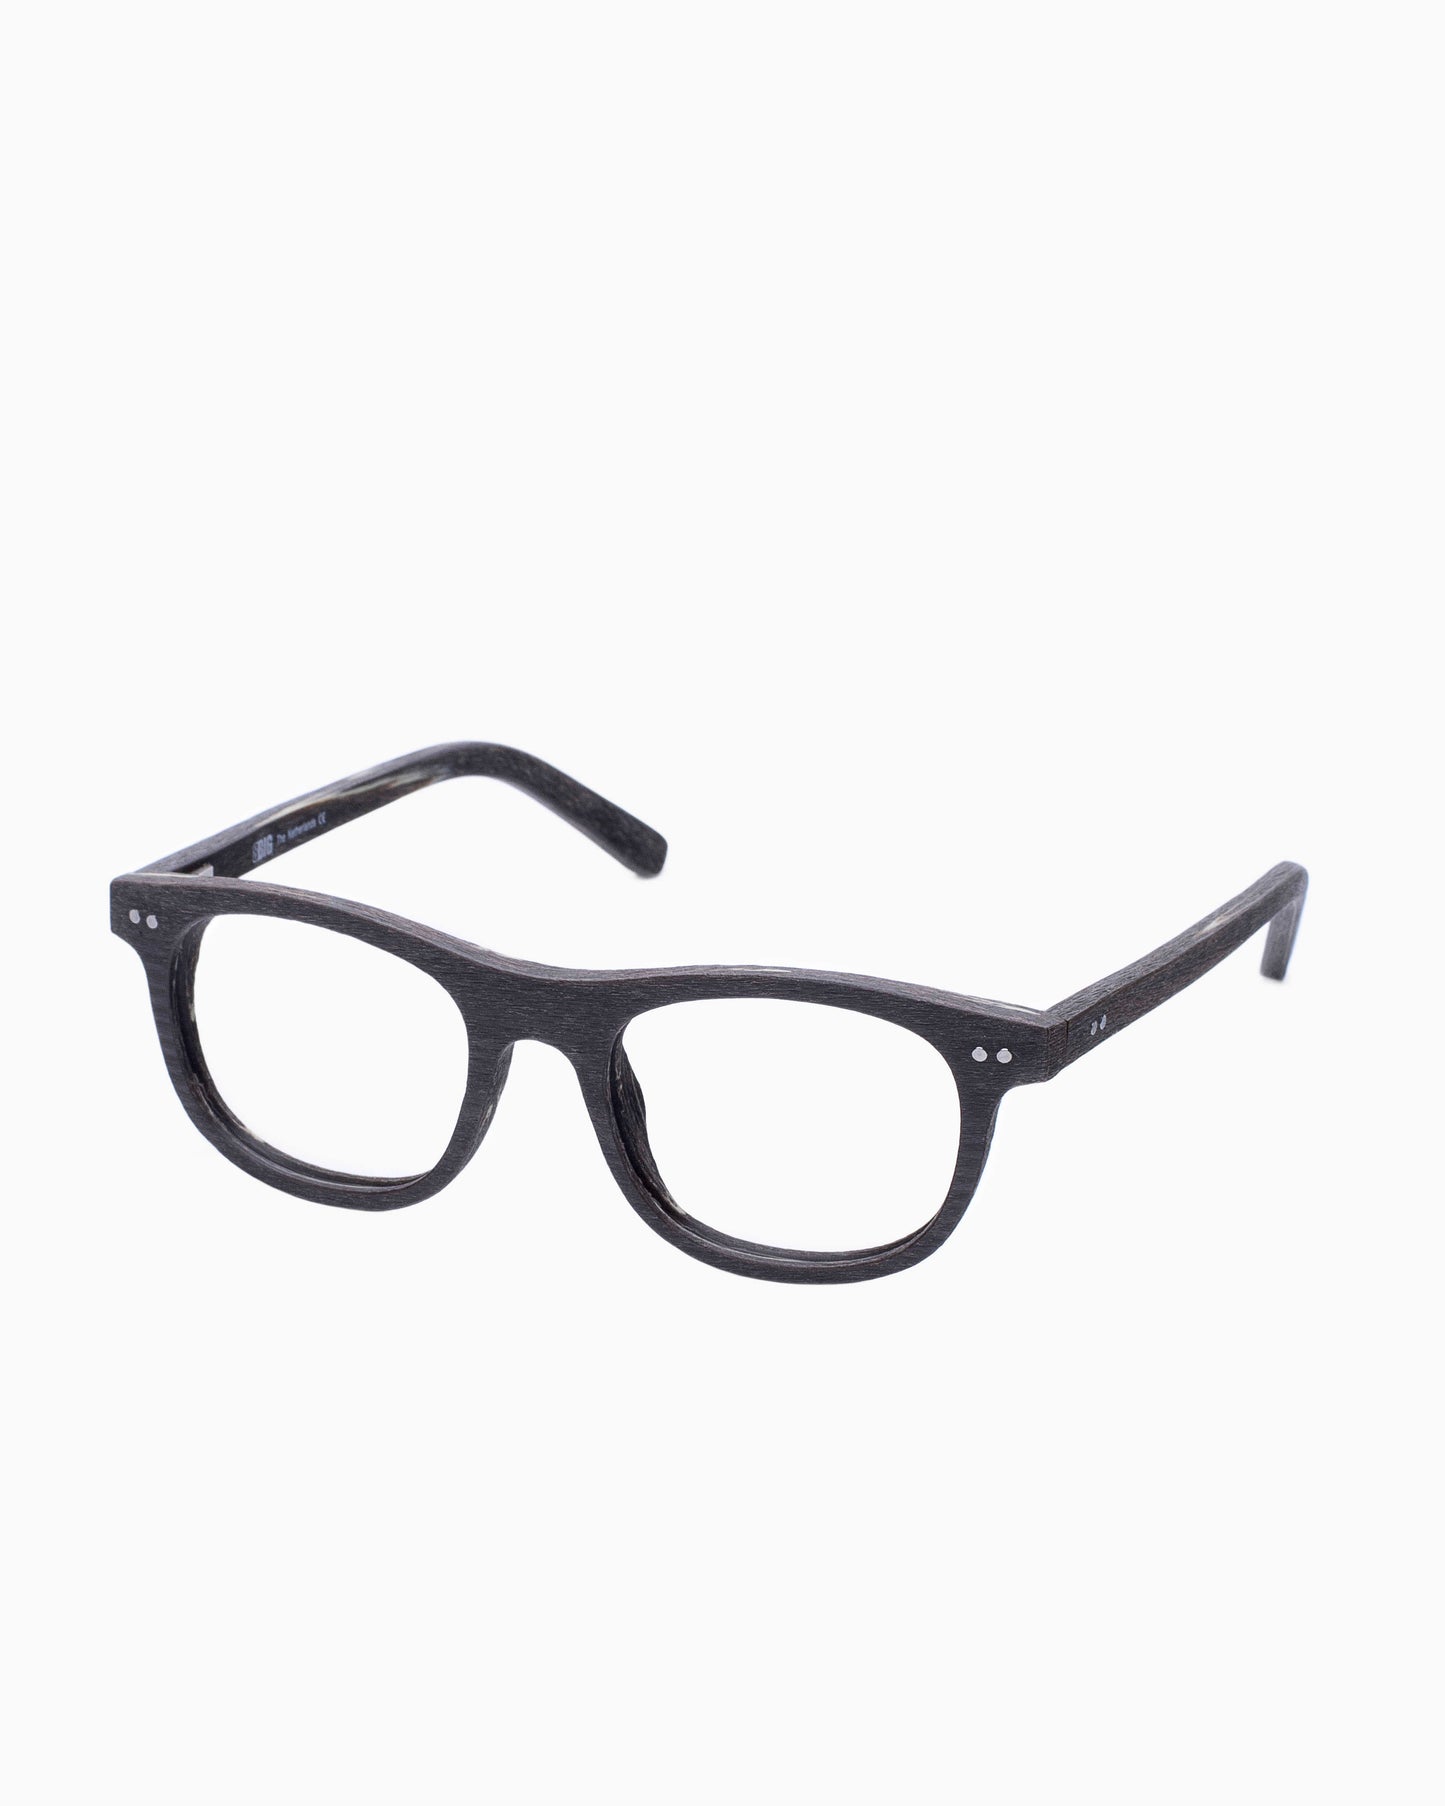 BBig - 219 - 391 | Bar à lunettes